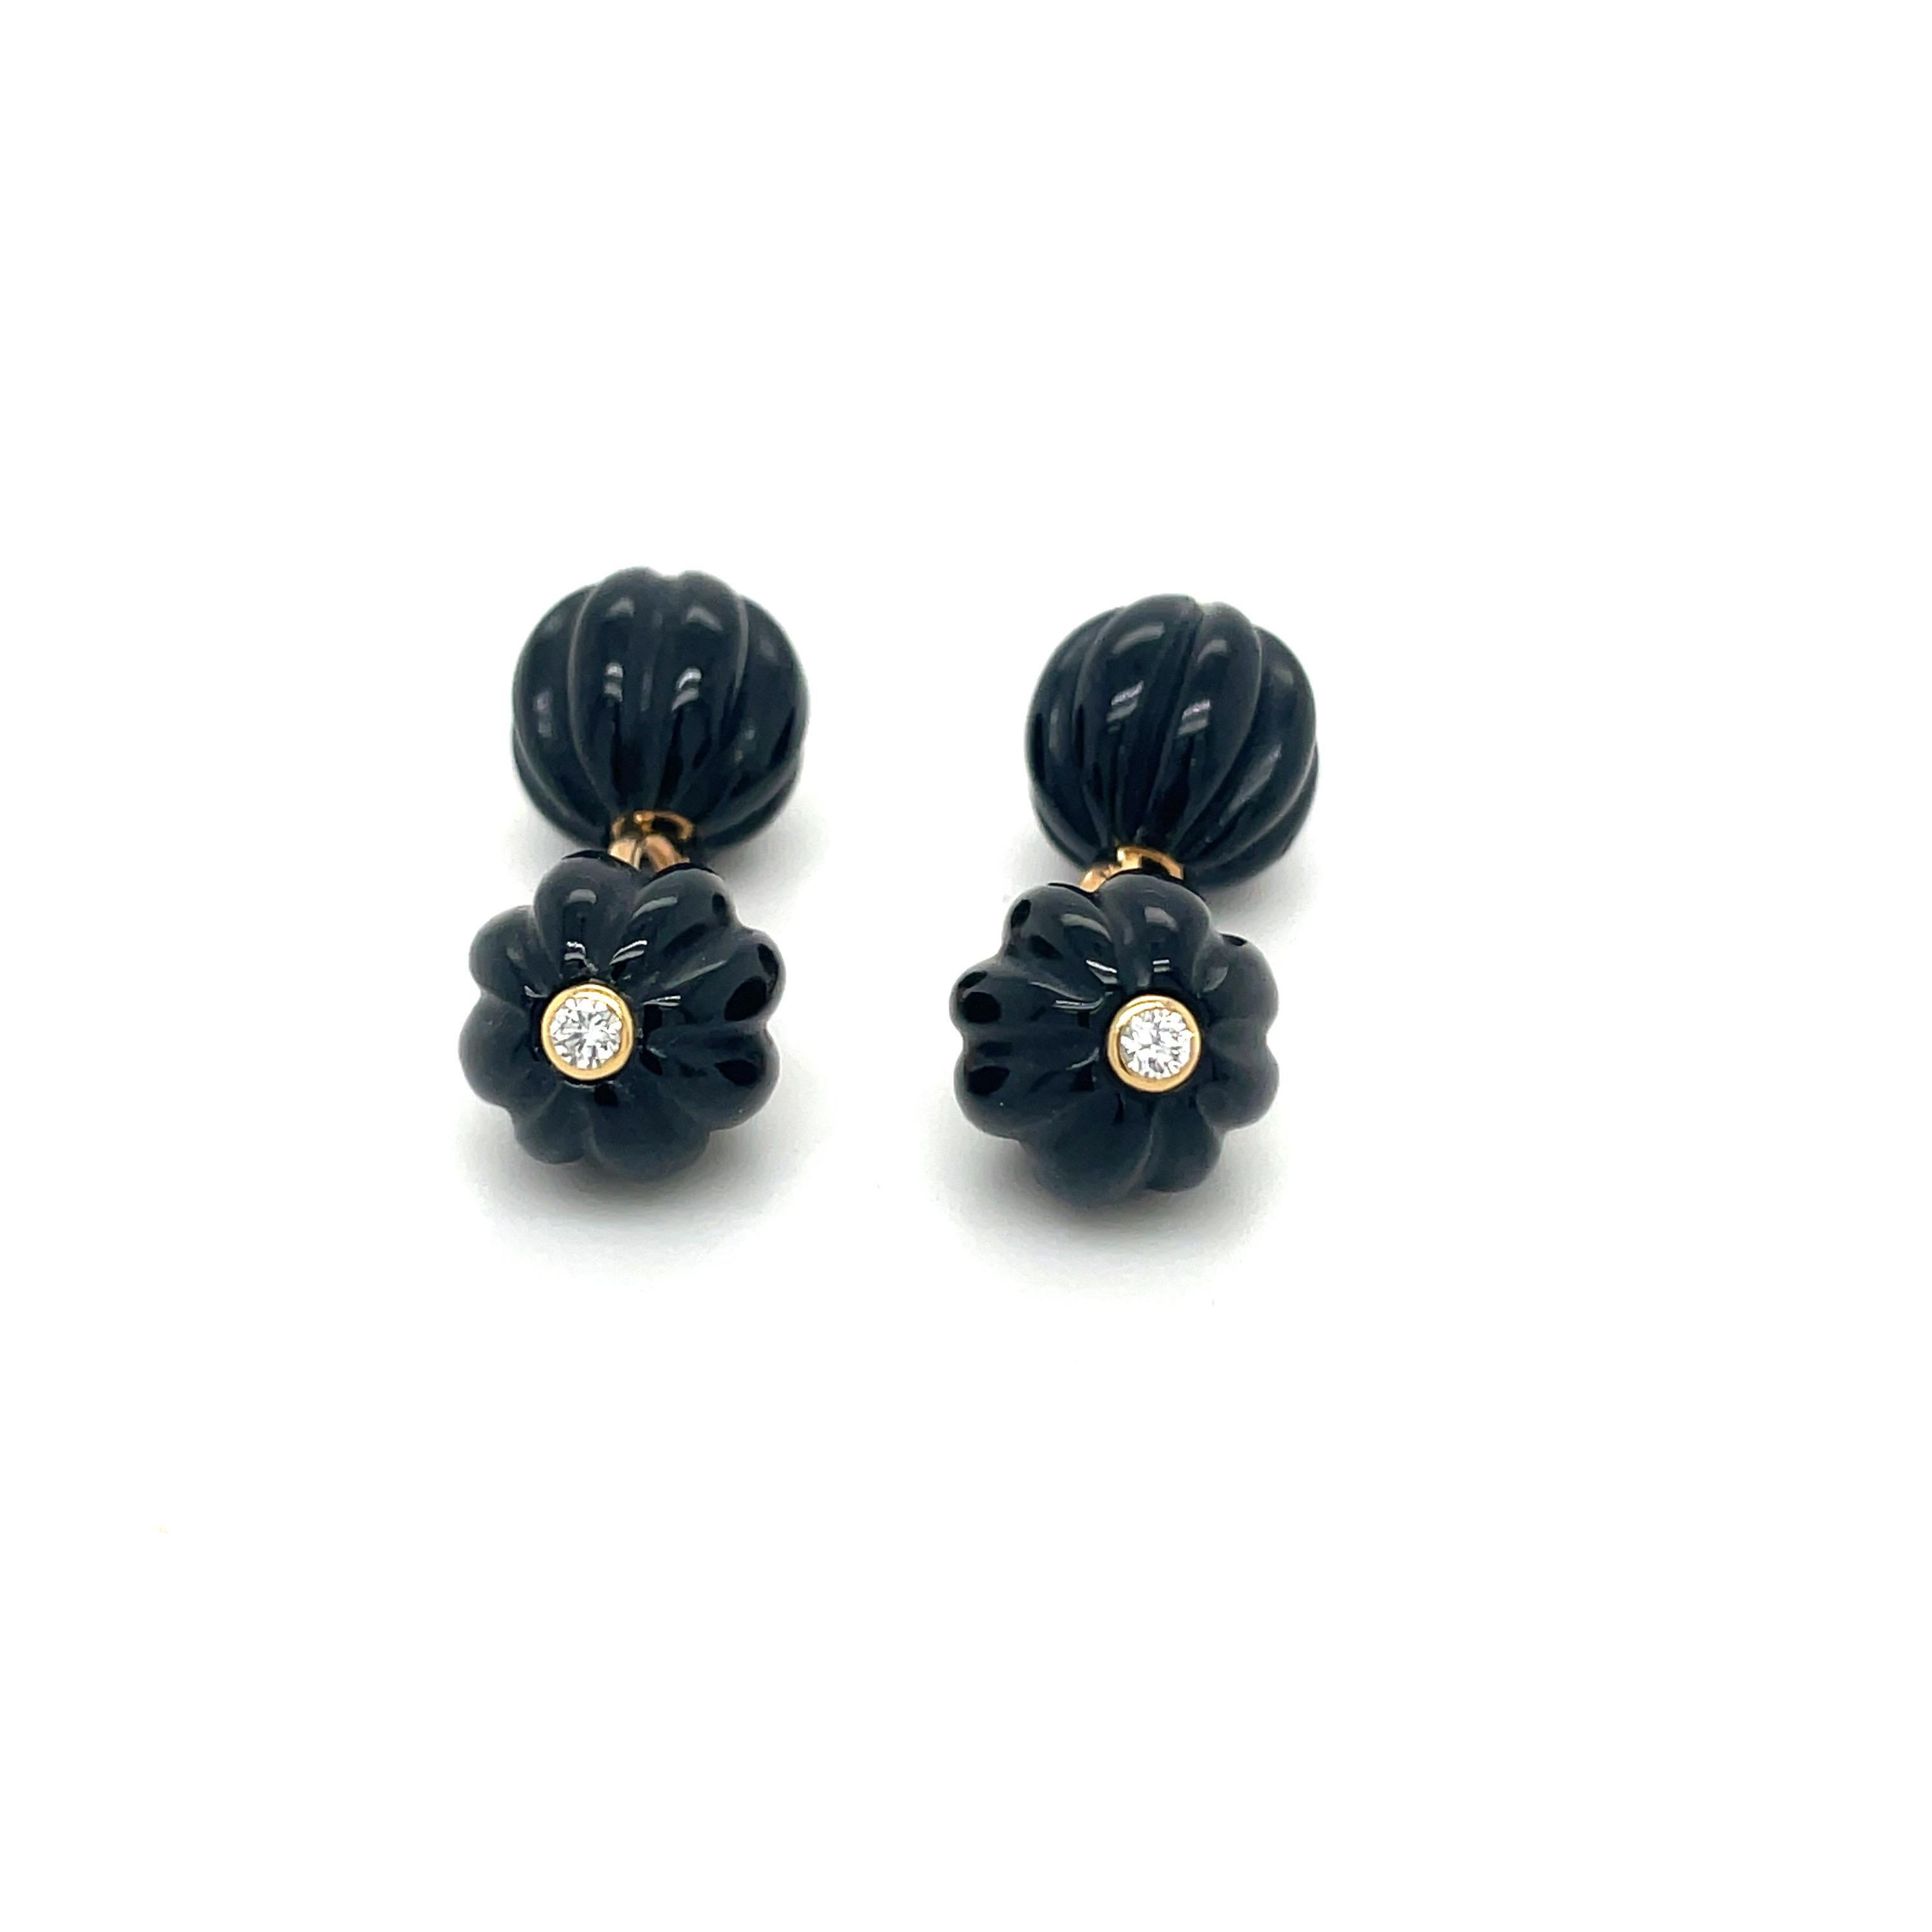 Schöne polierte Manschettenknöpfe aus schwarzem Onyx mit geriffelter Perle. Jedes Zentrum ist mit einem runden Brillanten besetzt. Die Steine werden durch eine 14-karätige Goldkette zusammengehalten.
Gestempelt 14k